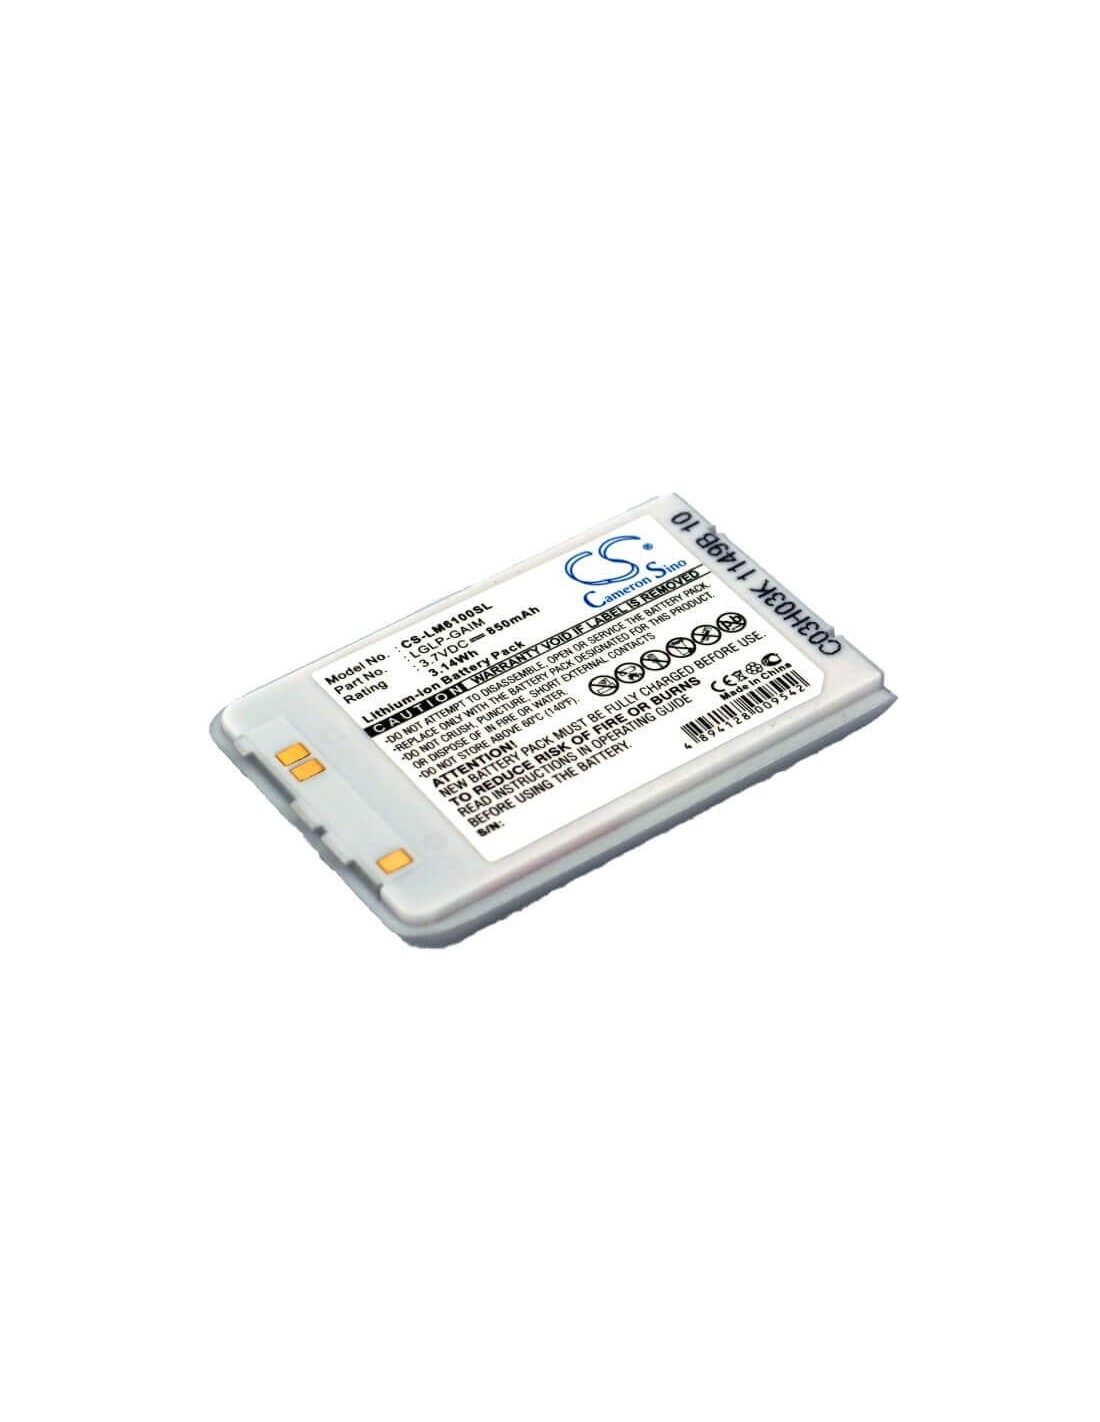 Battery for LG M6100, G259, G258 3.7V, 850mAh - 3.15Wh